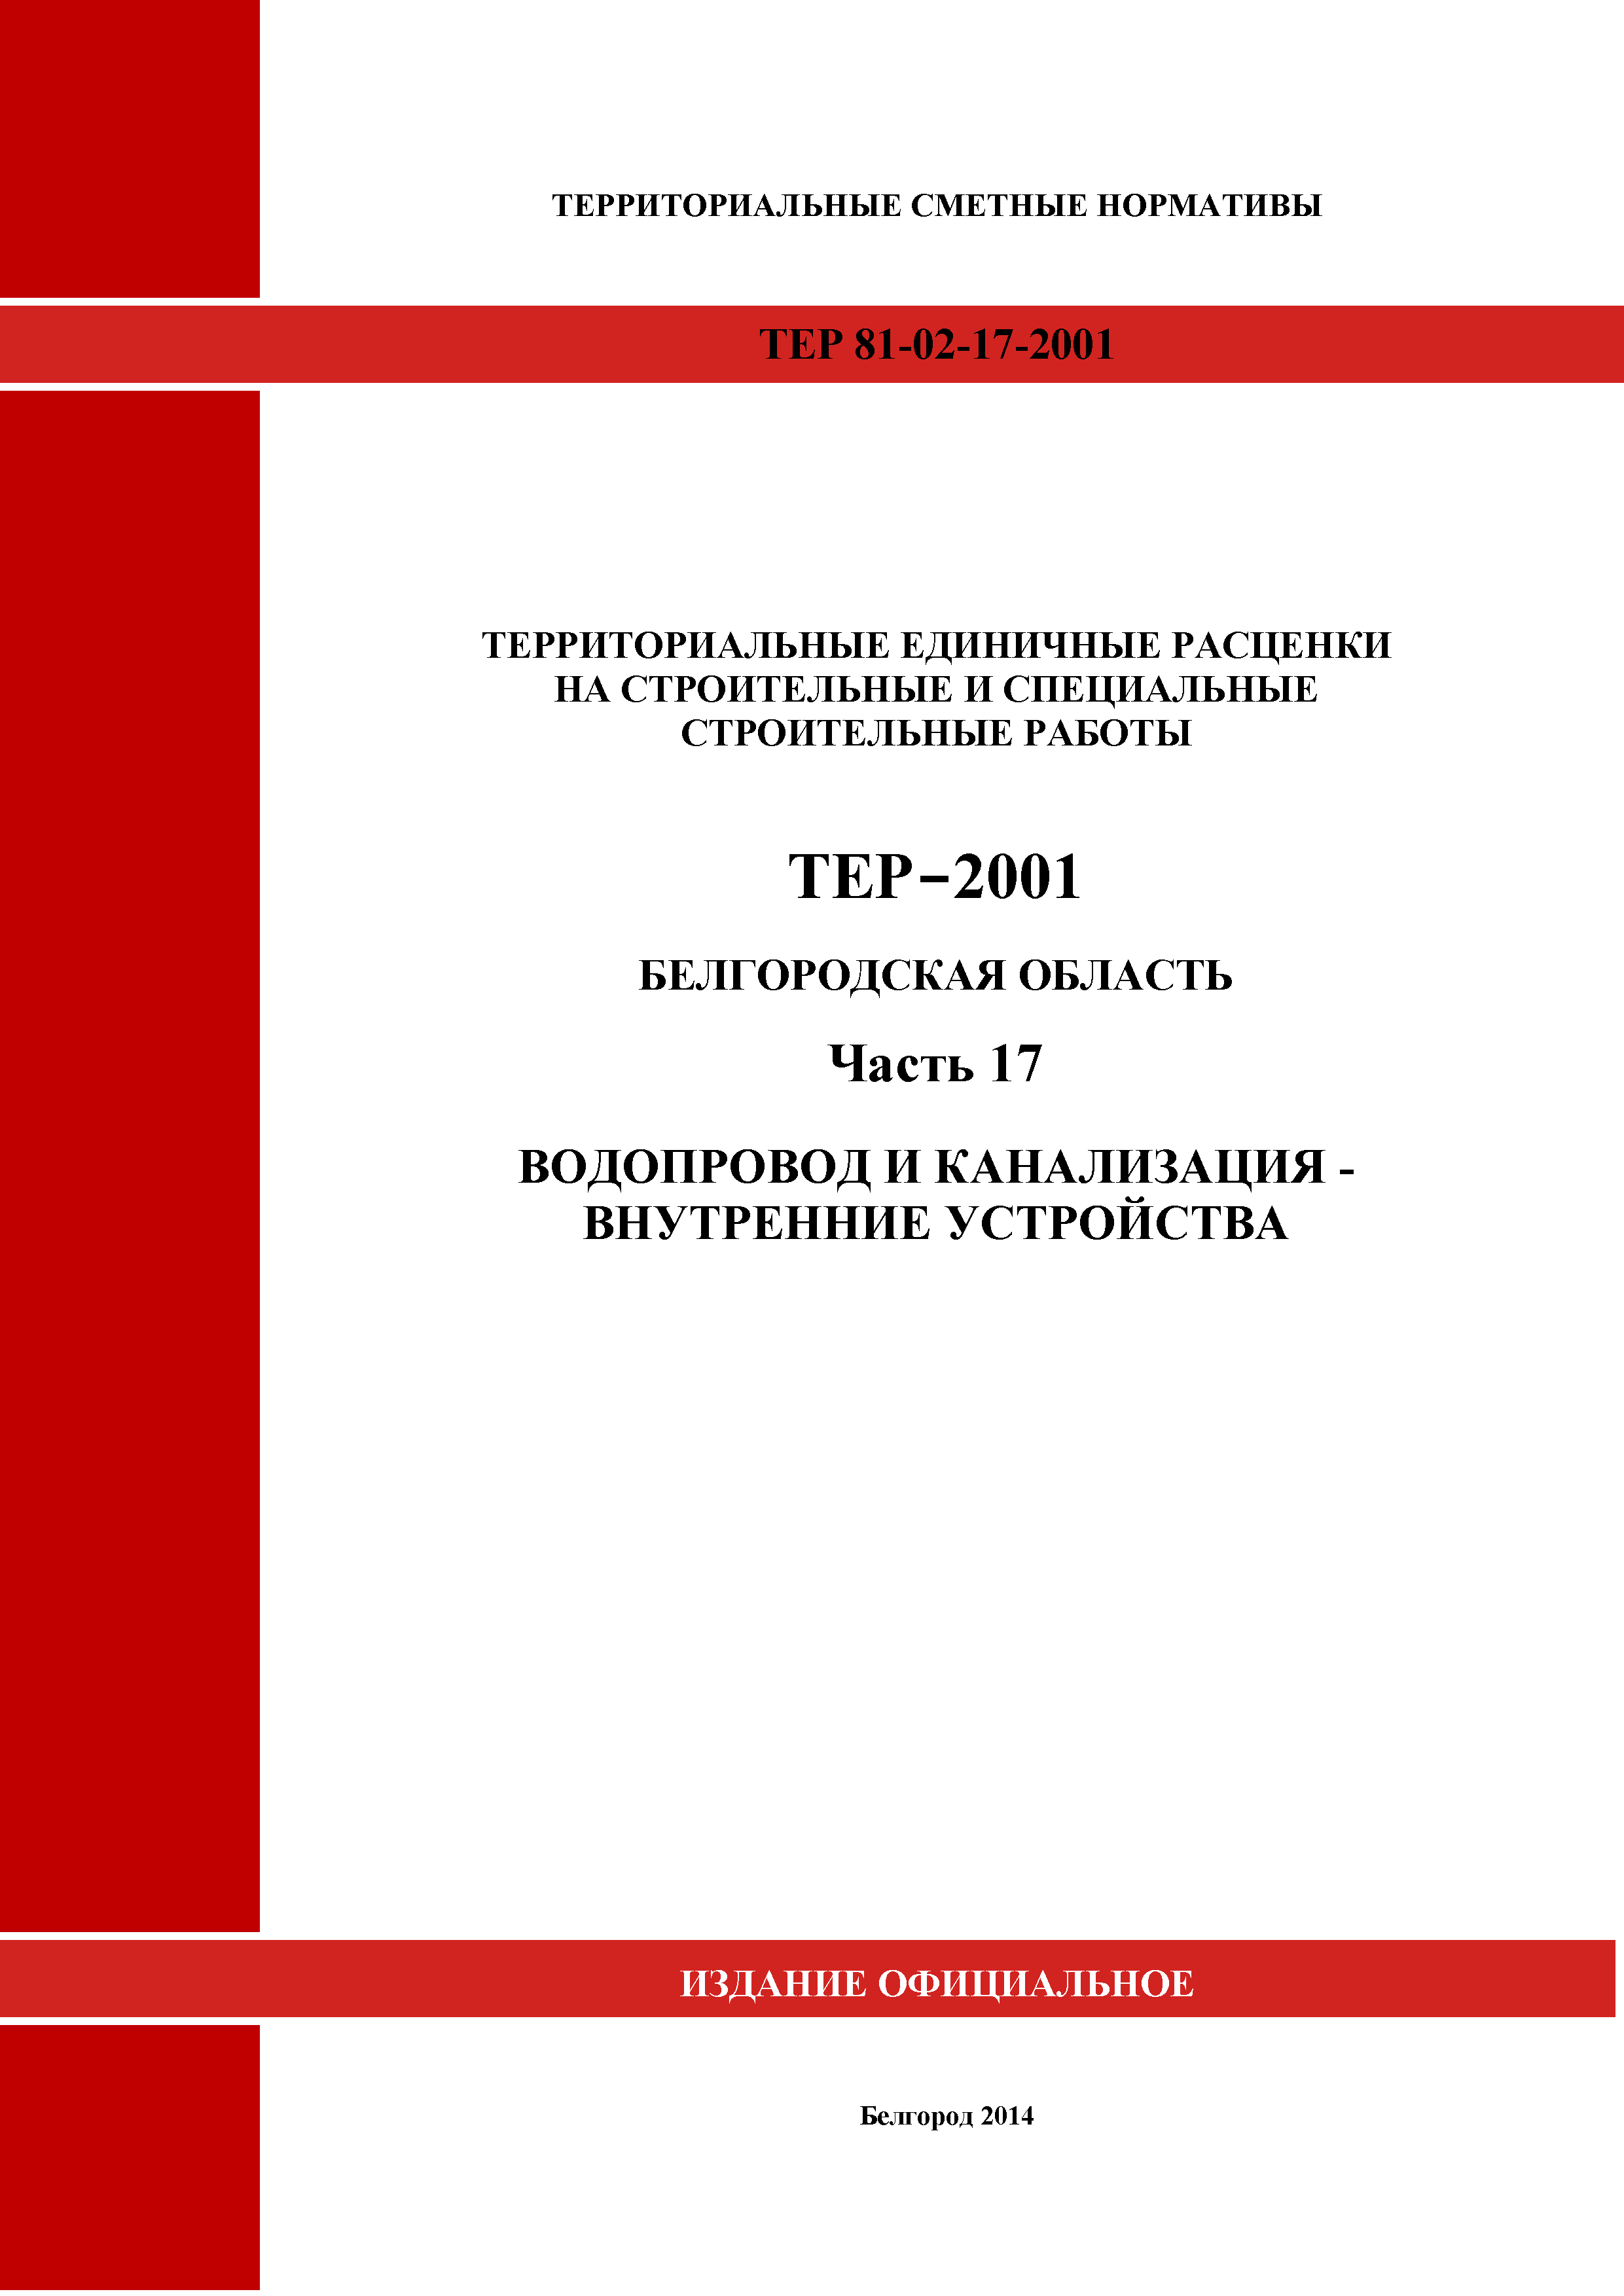 ТЕР Белгородская область 81-02-17-2001